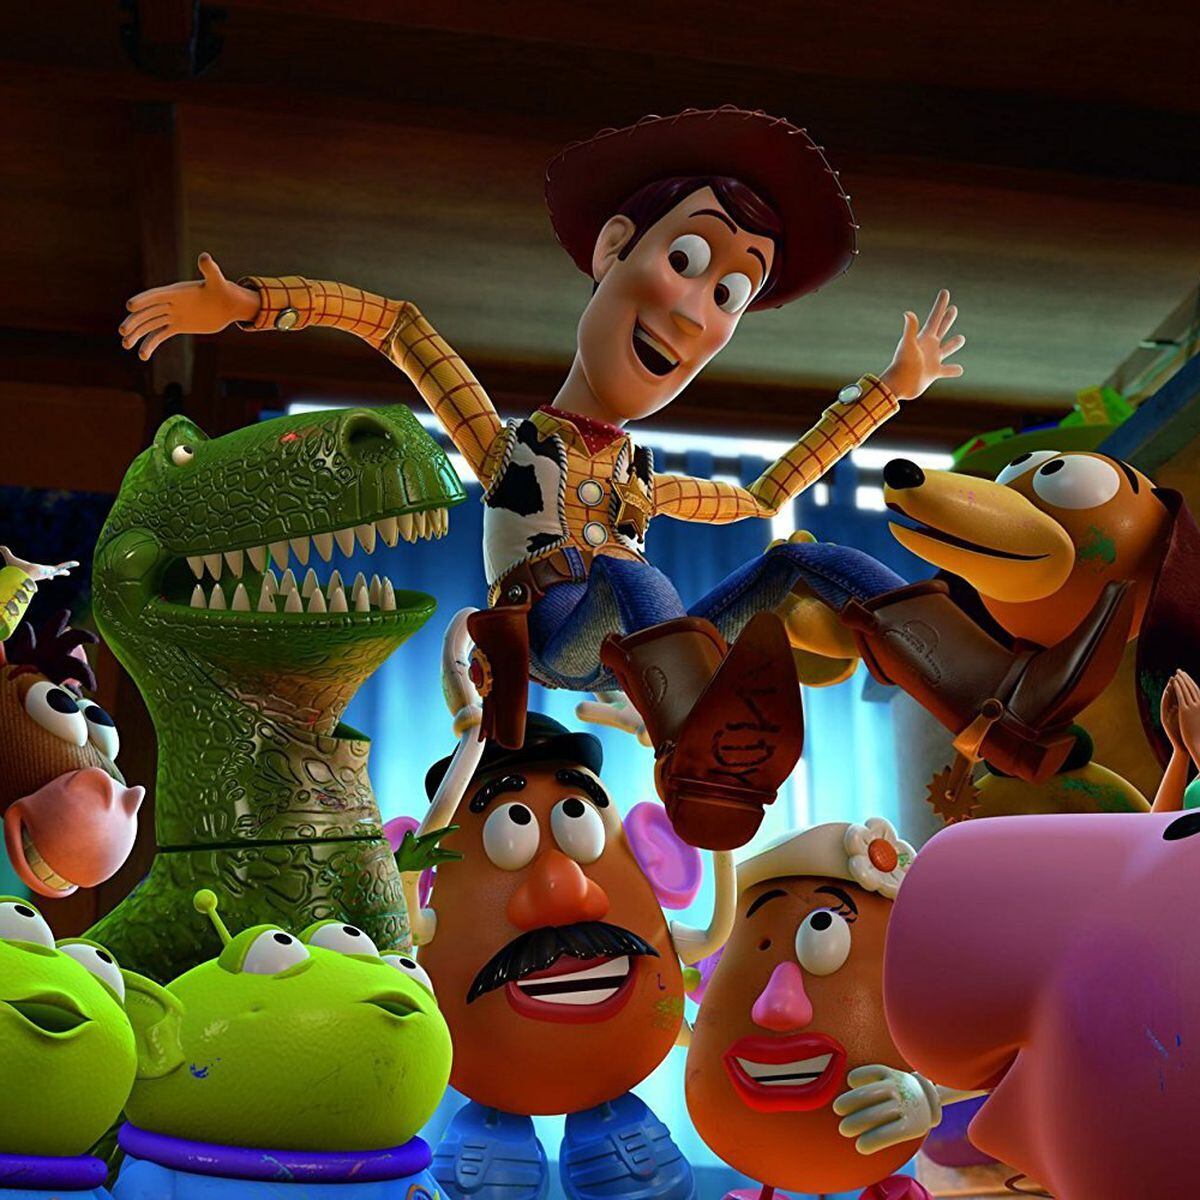 Multiverso Pixar? Artista imagina personagens de Toy Story no estilo anime  (e nós já queremos ver!)